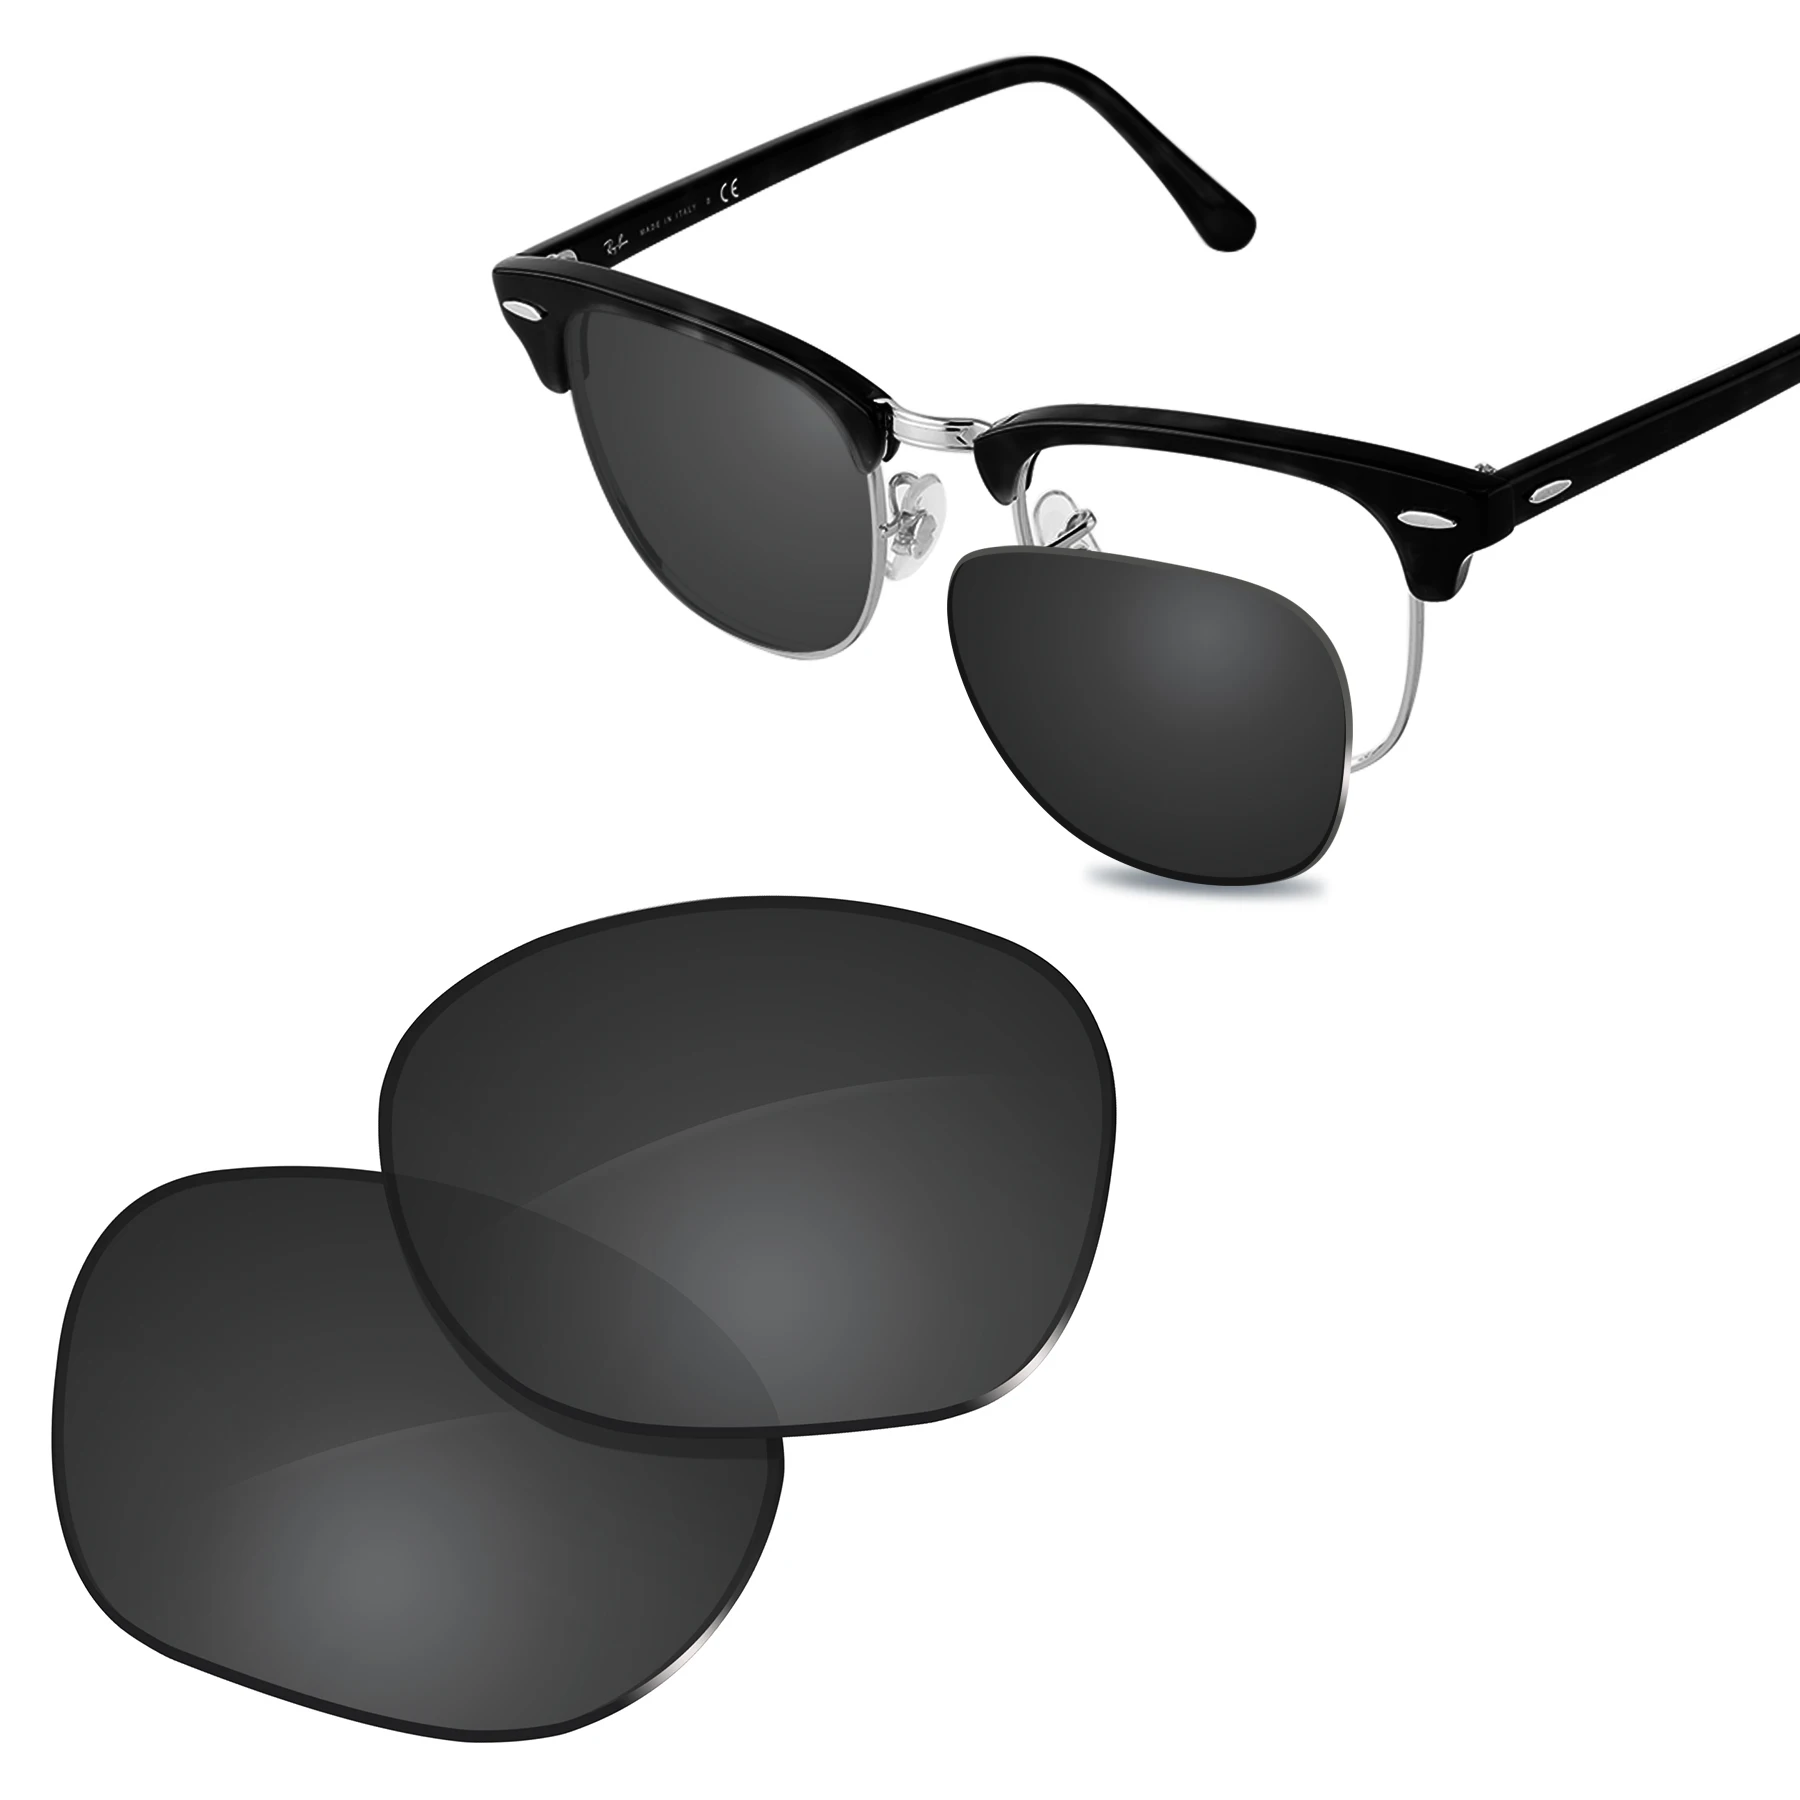 Glintbay-Lentes de polarizadas para gafas de sol, lentes de sol para Ray-Ban RB3016-49 Clubmaster, varios nuevo rendimiento - AliExpress